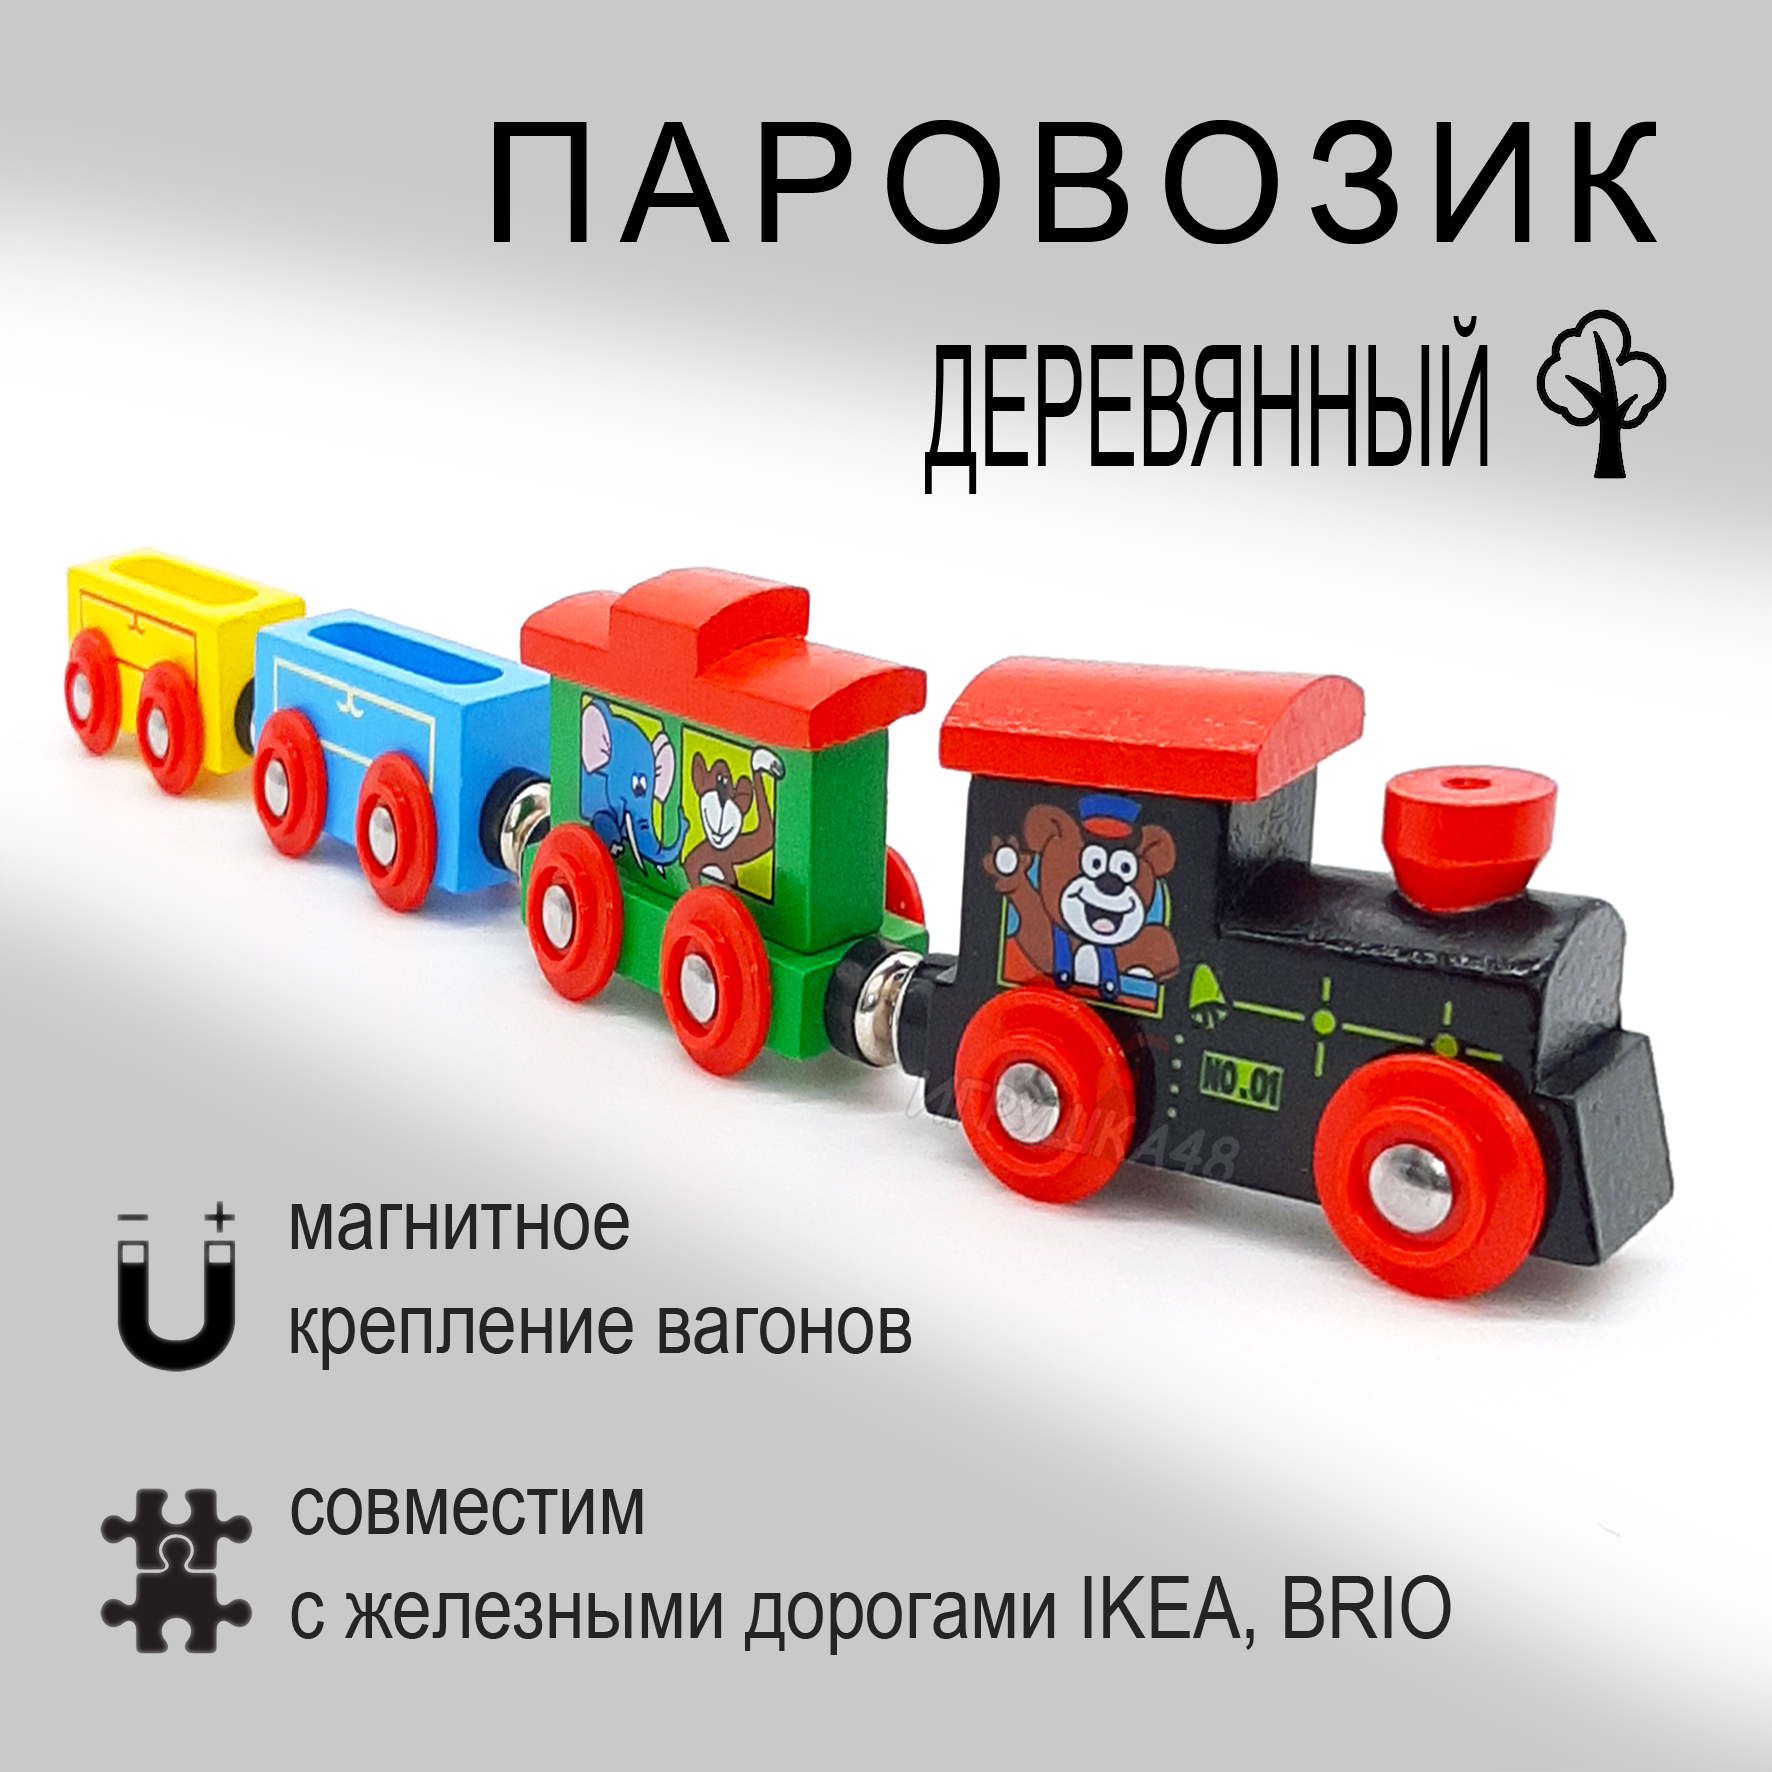 Паровозик магнитный деревянный для игровой железной дороги, Зверюшки паровозик вито в блистере роботы поезда